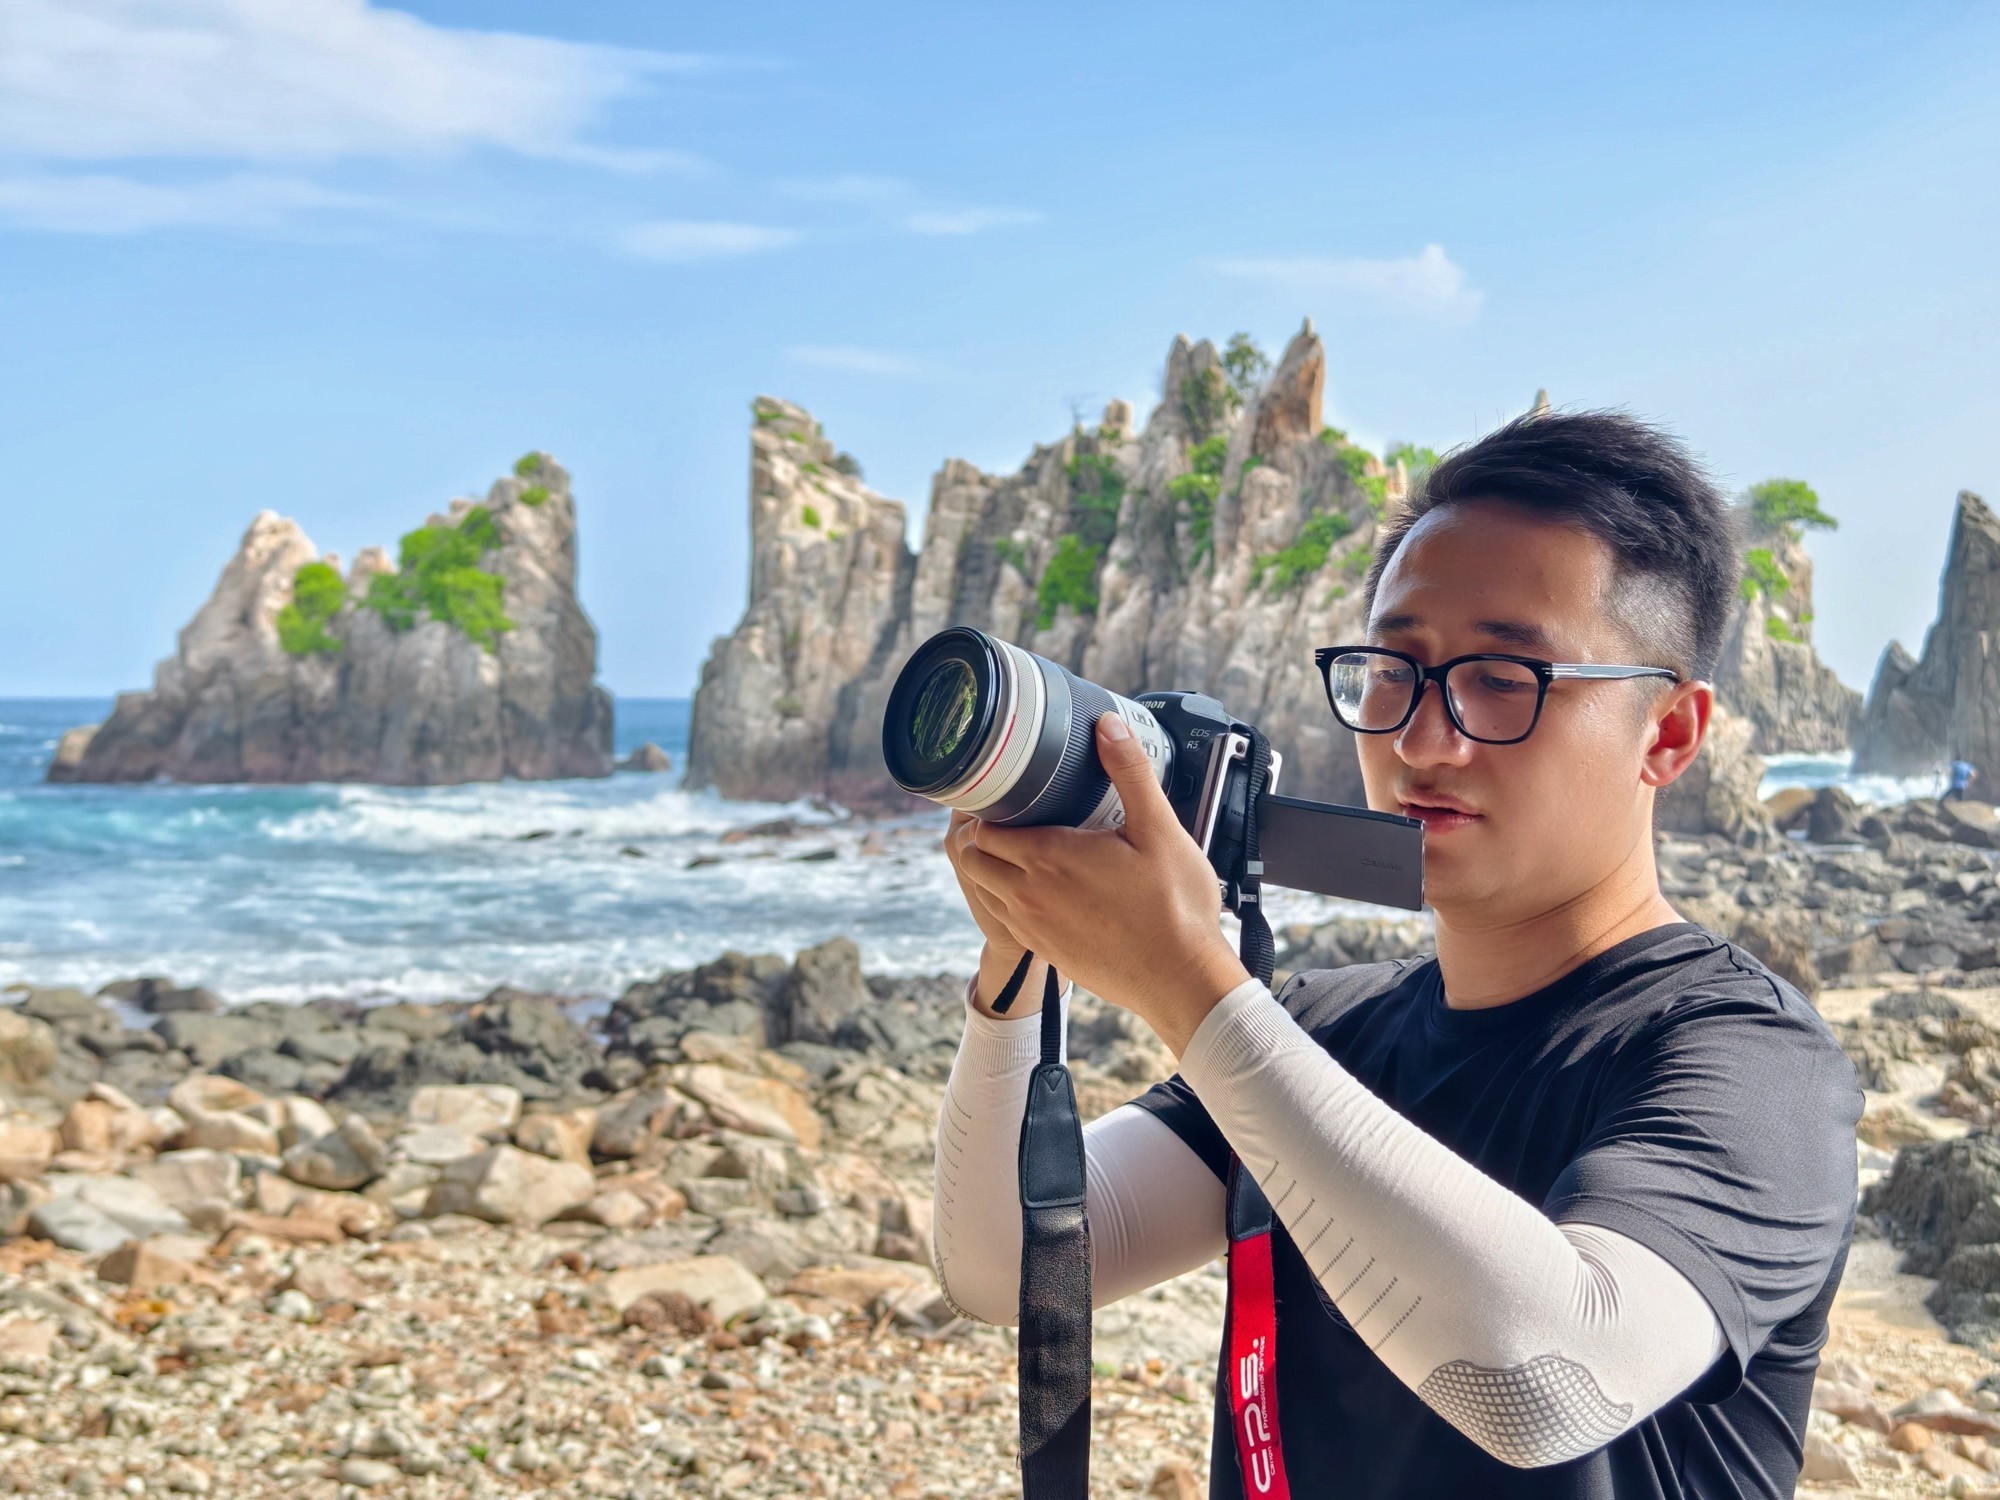 火山、雨林与沙滩的交织 佳能EOS R5全画幅相机行摄印尼